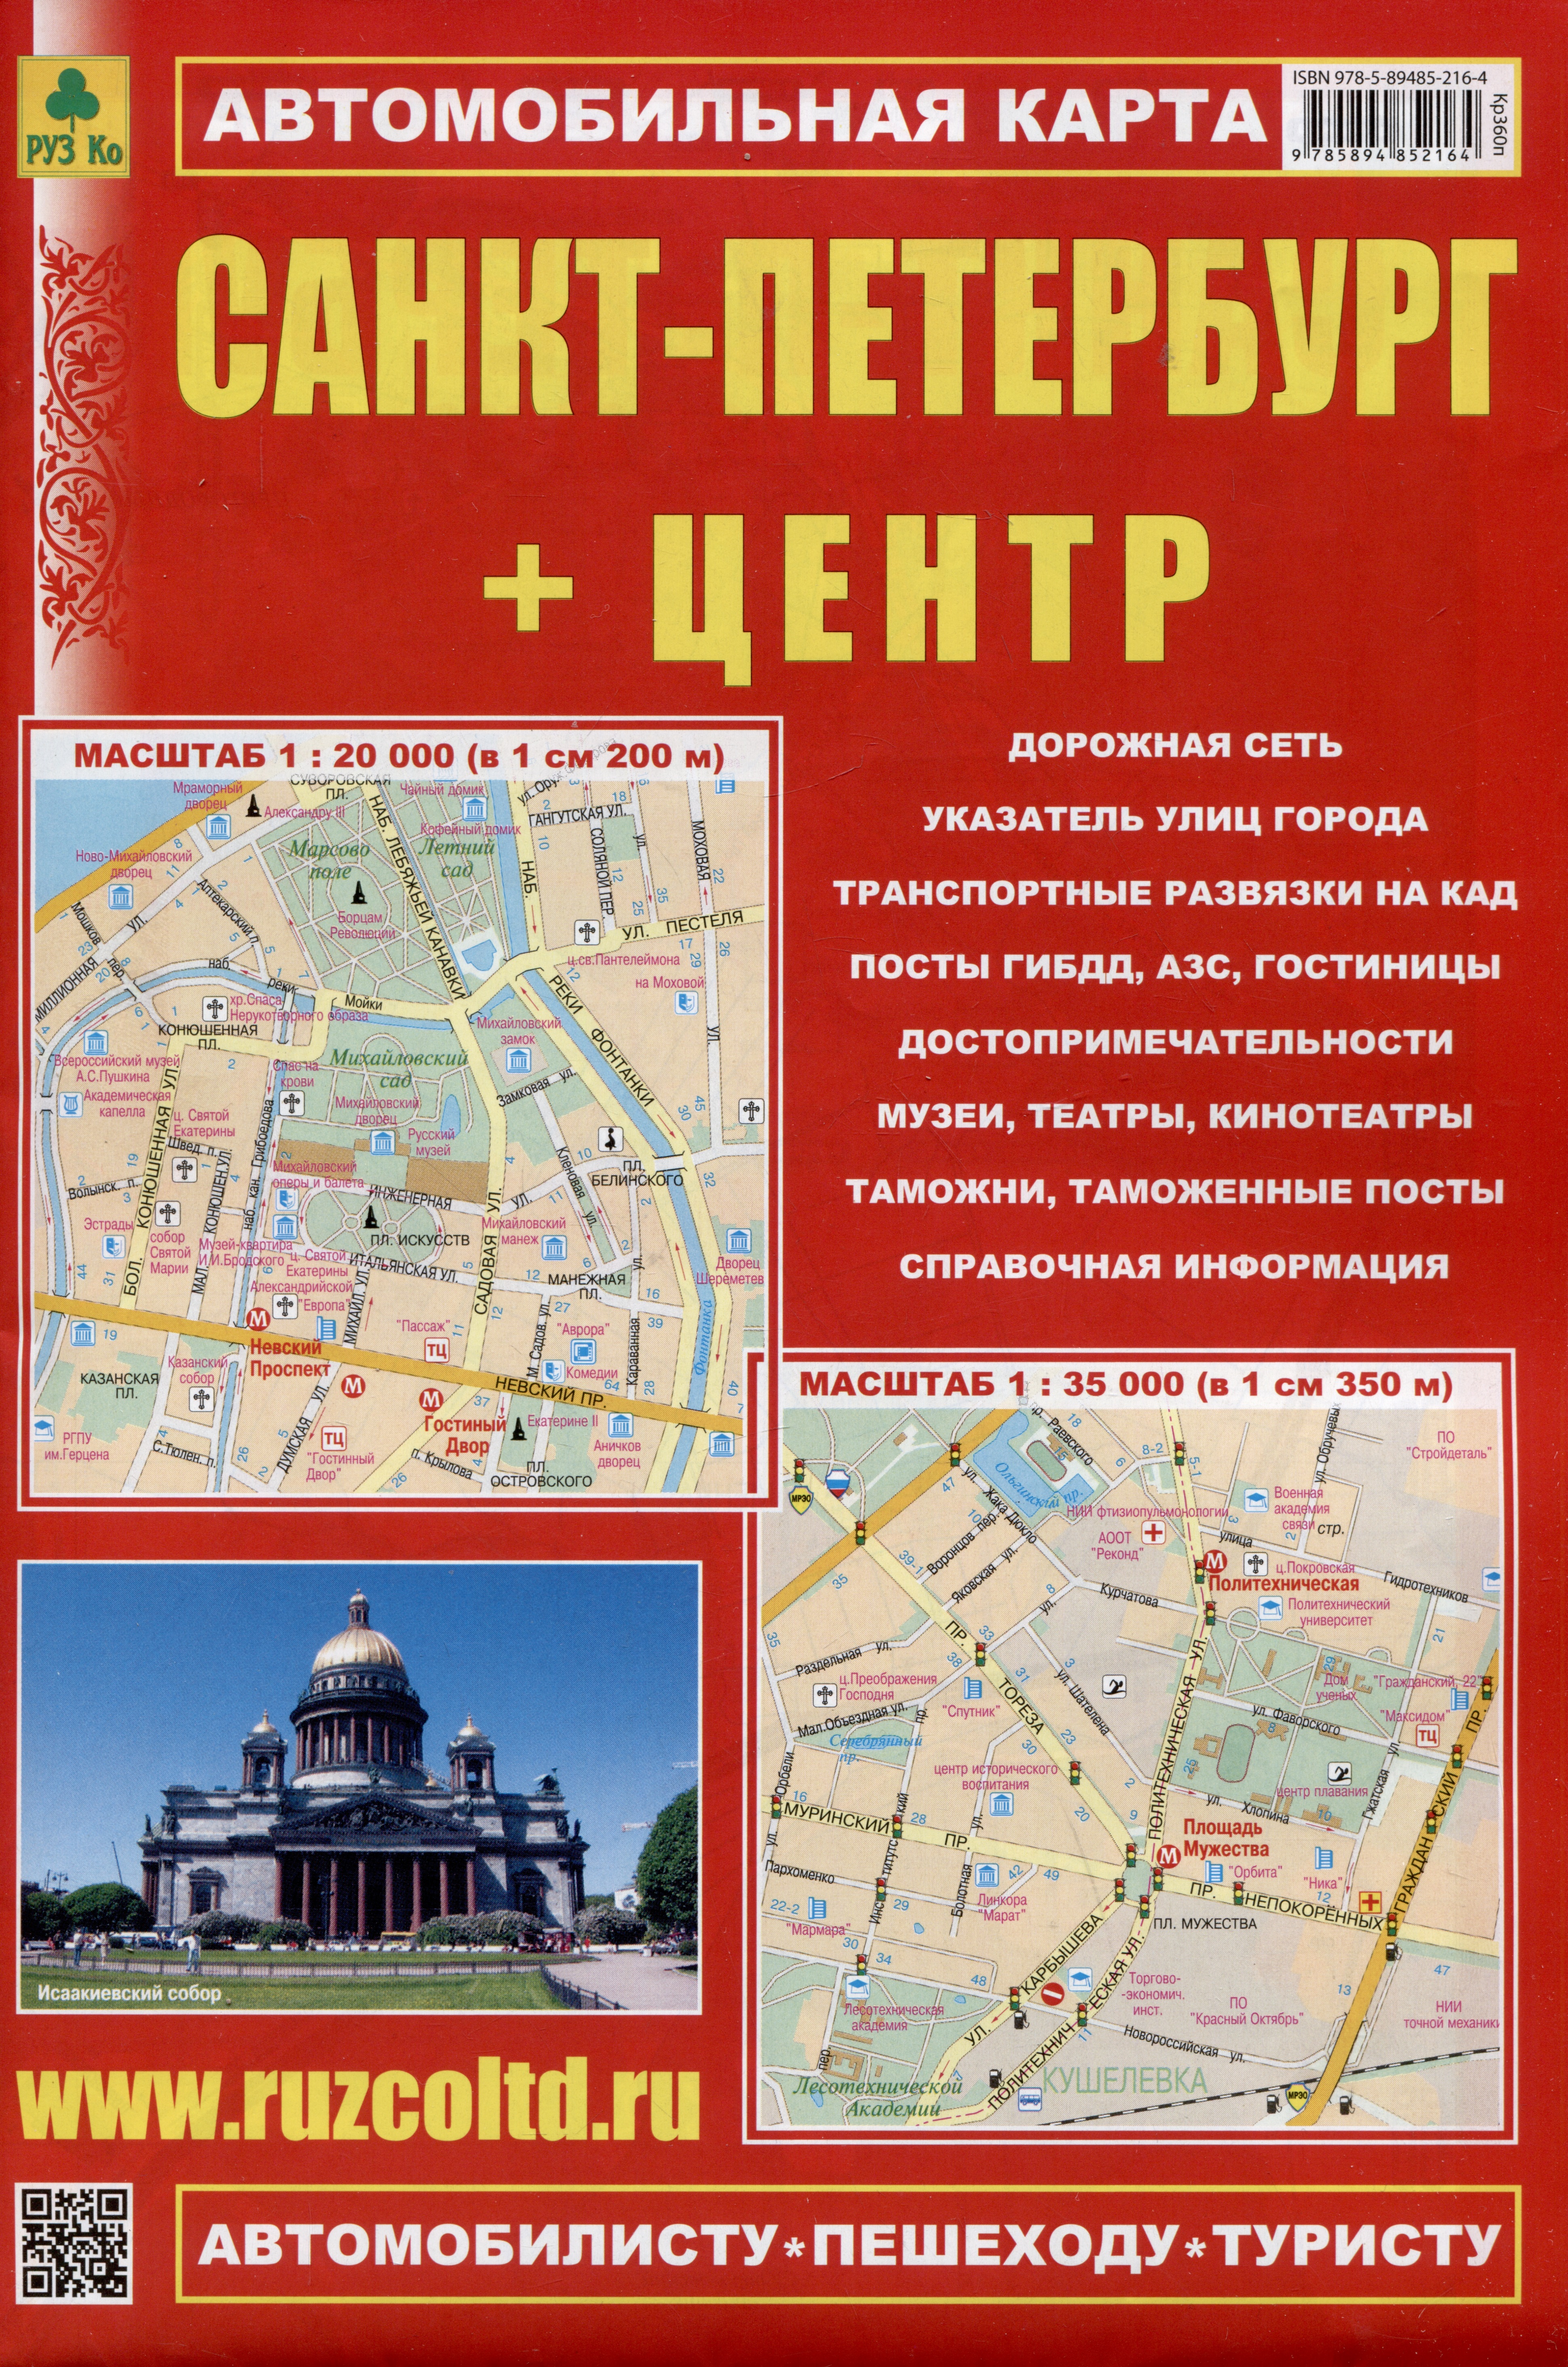 Санкт-Петербург + Центр. Автомобильная карта. Карта города (1:35 000), карта центра (1:20 000) + схема метро